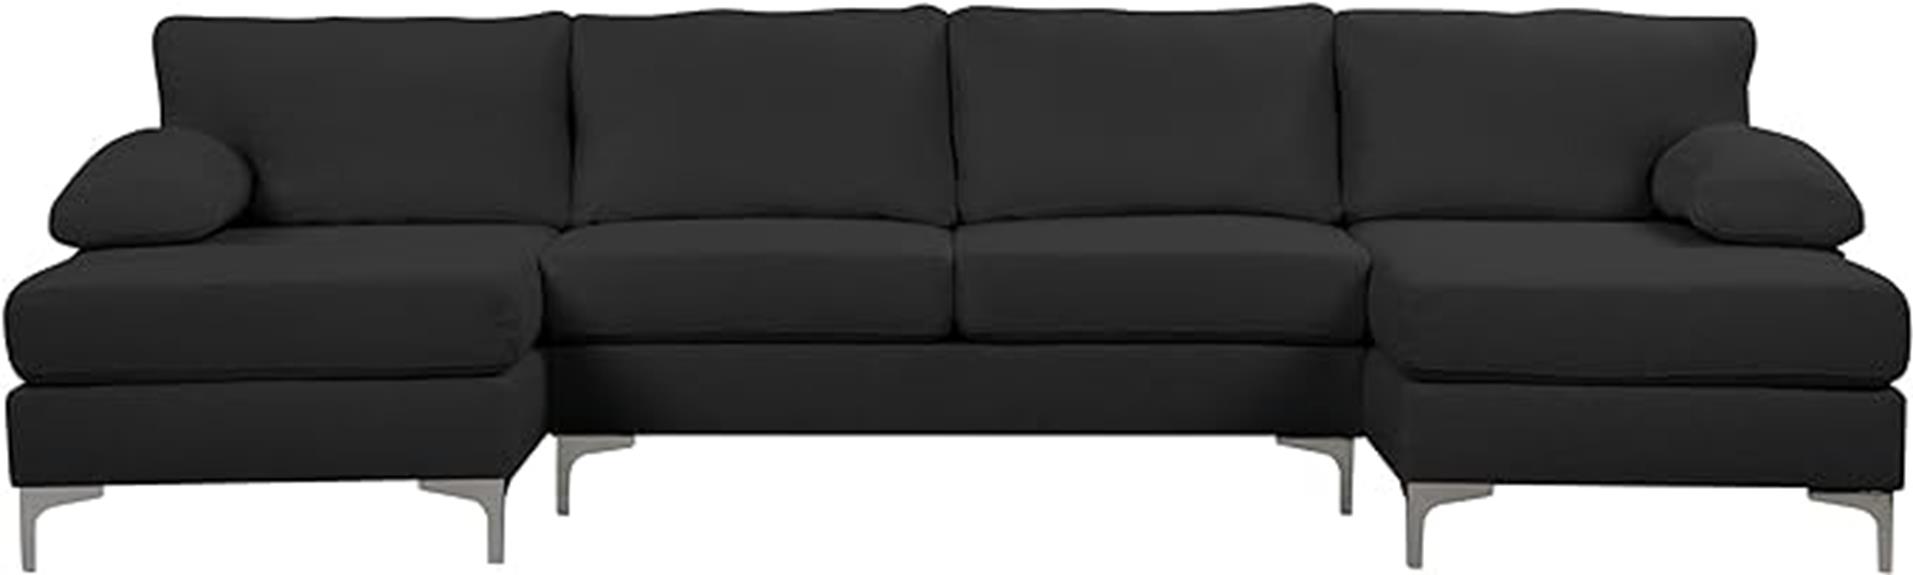 modern u shape sectional sofa